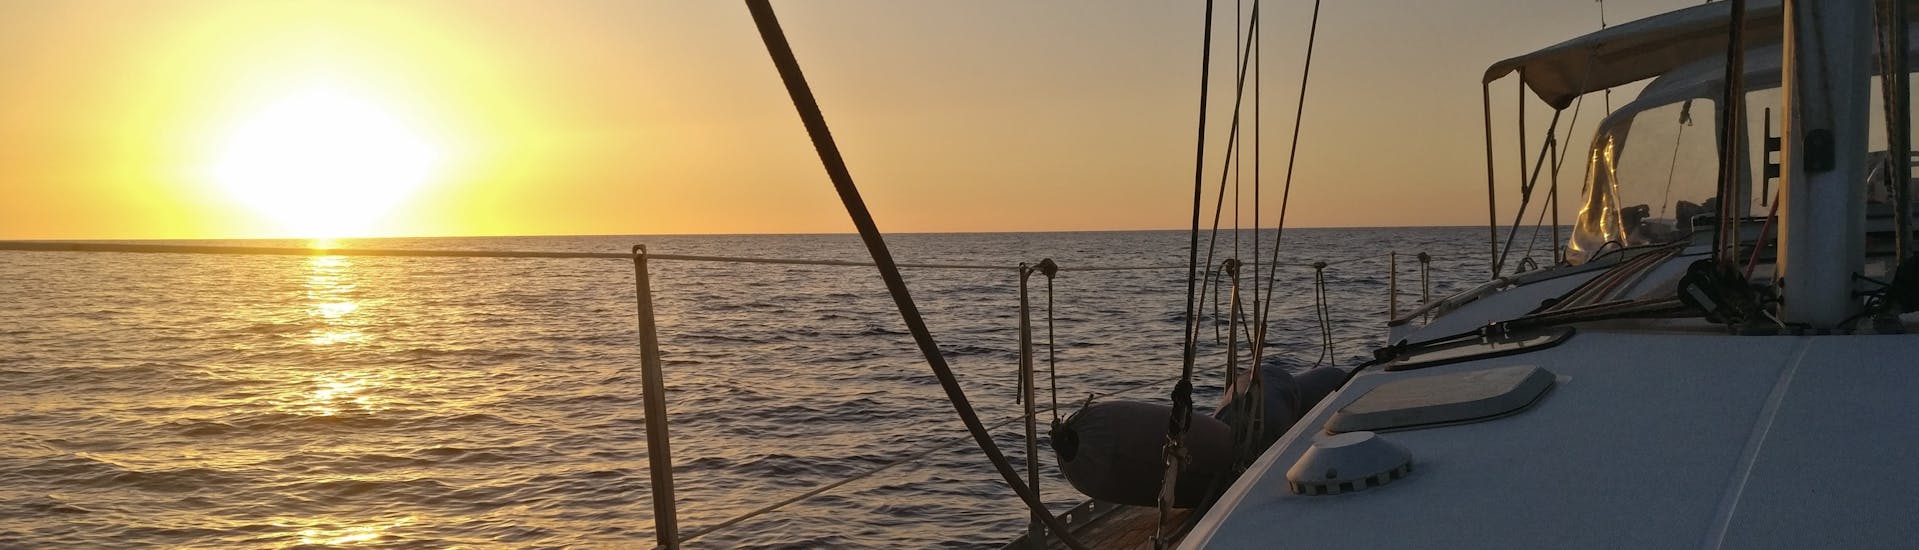 Bild eines Bootes von 40° Parallelo Leuca bei Sonnenuntergang.